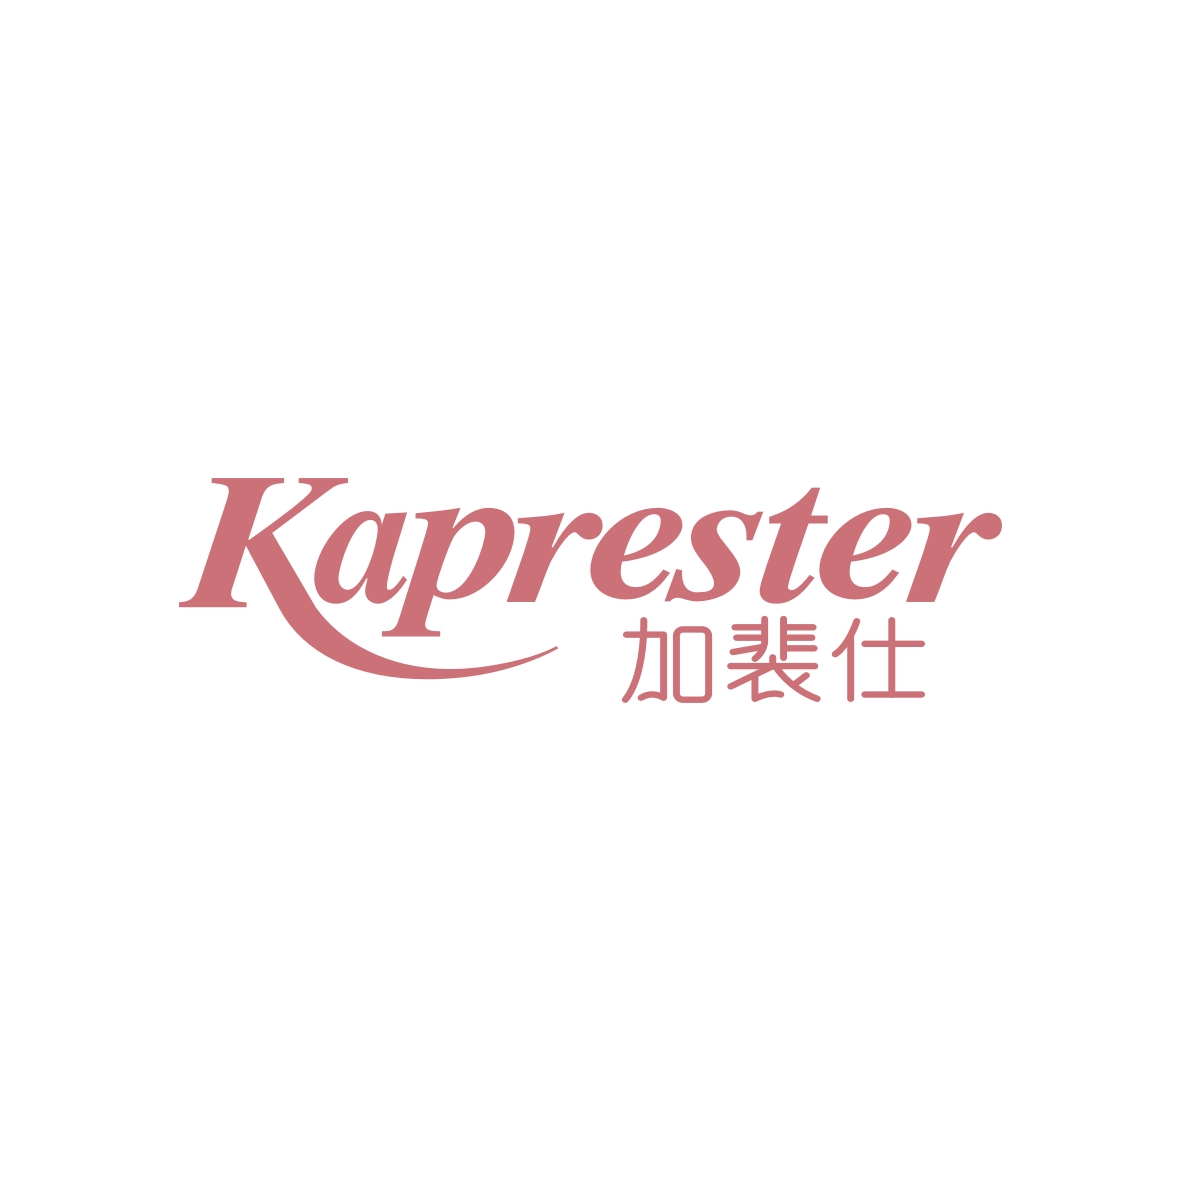 广州锦绣缘网络科技有限公司商标加裴仕 KAPRESTER（03类）多少钱？